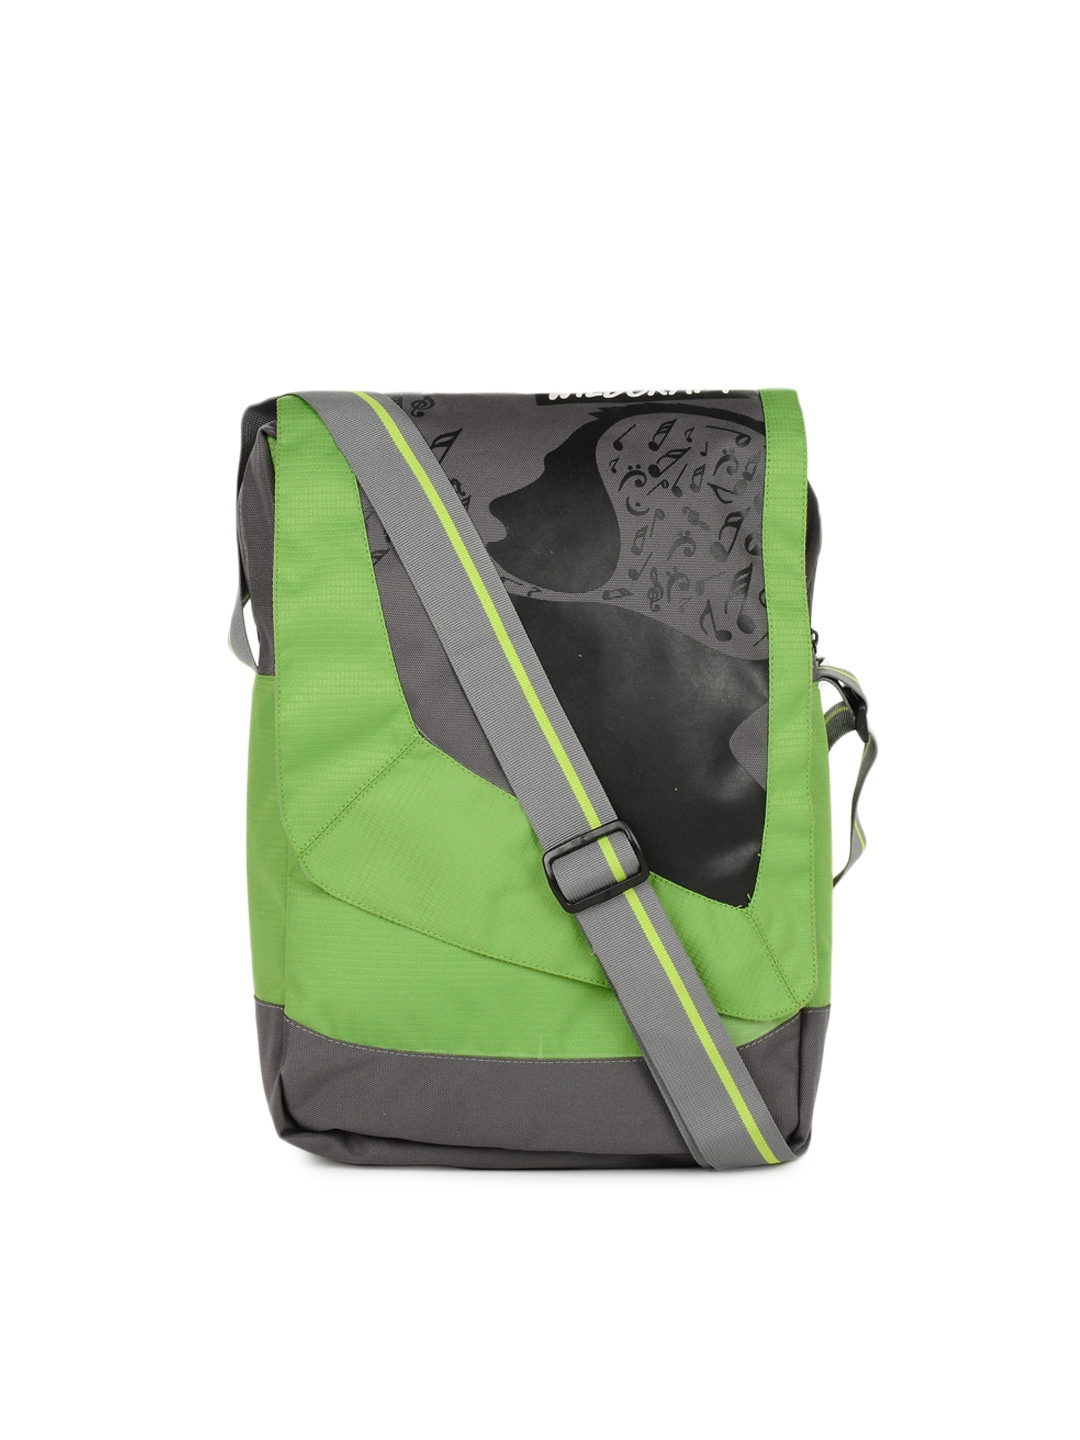 Wildcraft Unisex Green & Grey Printed Sling Bag